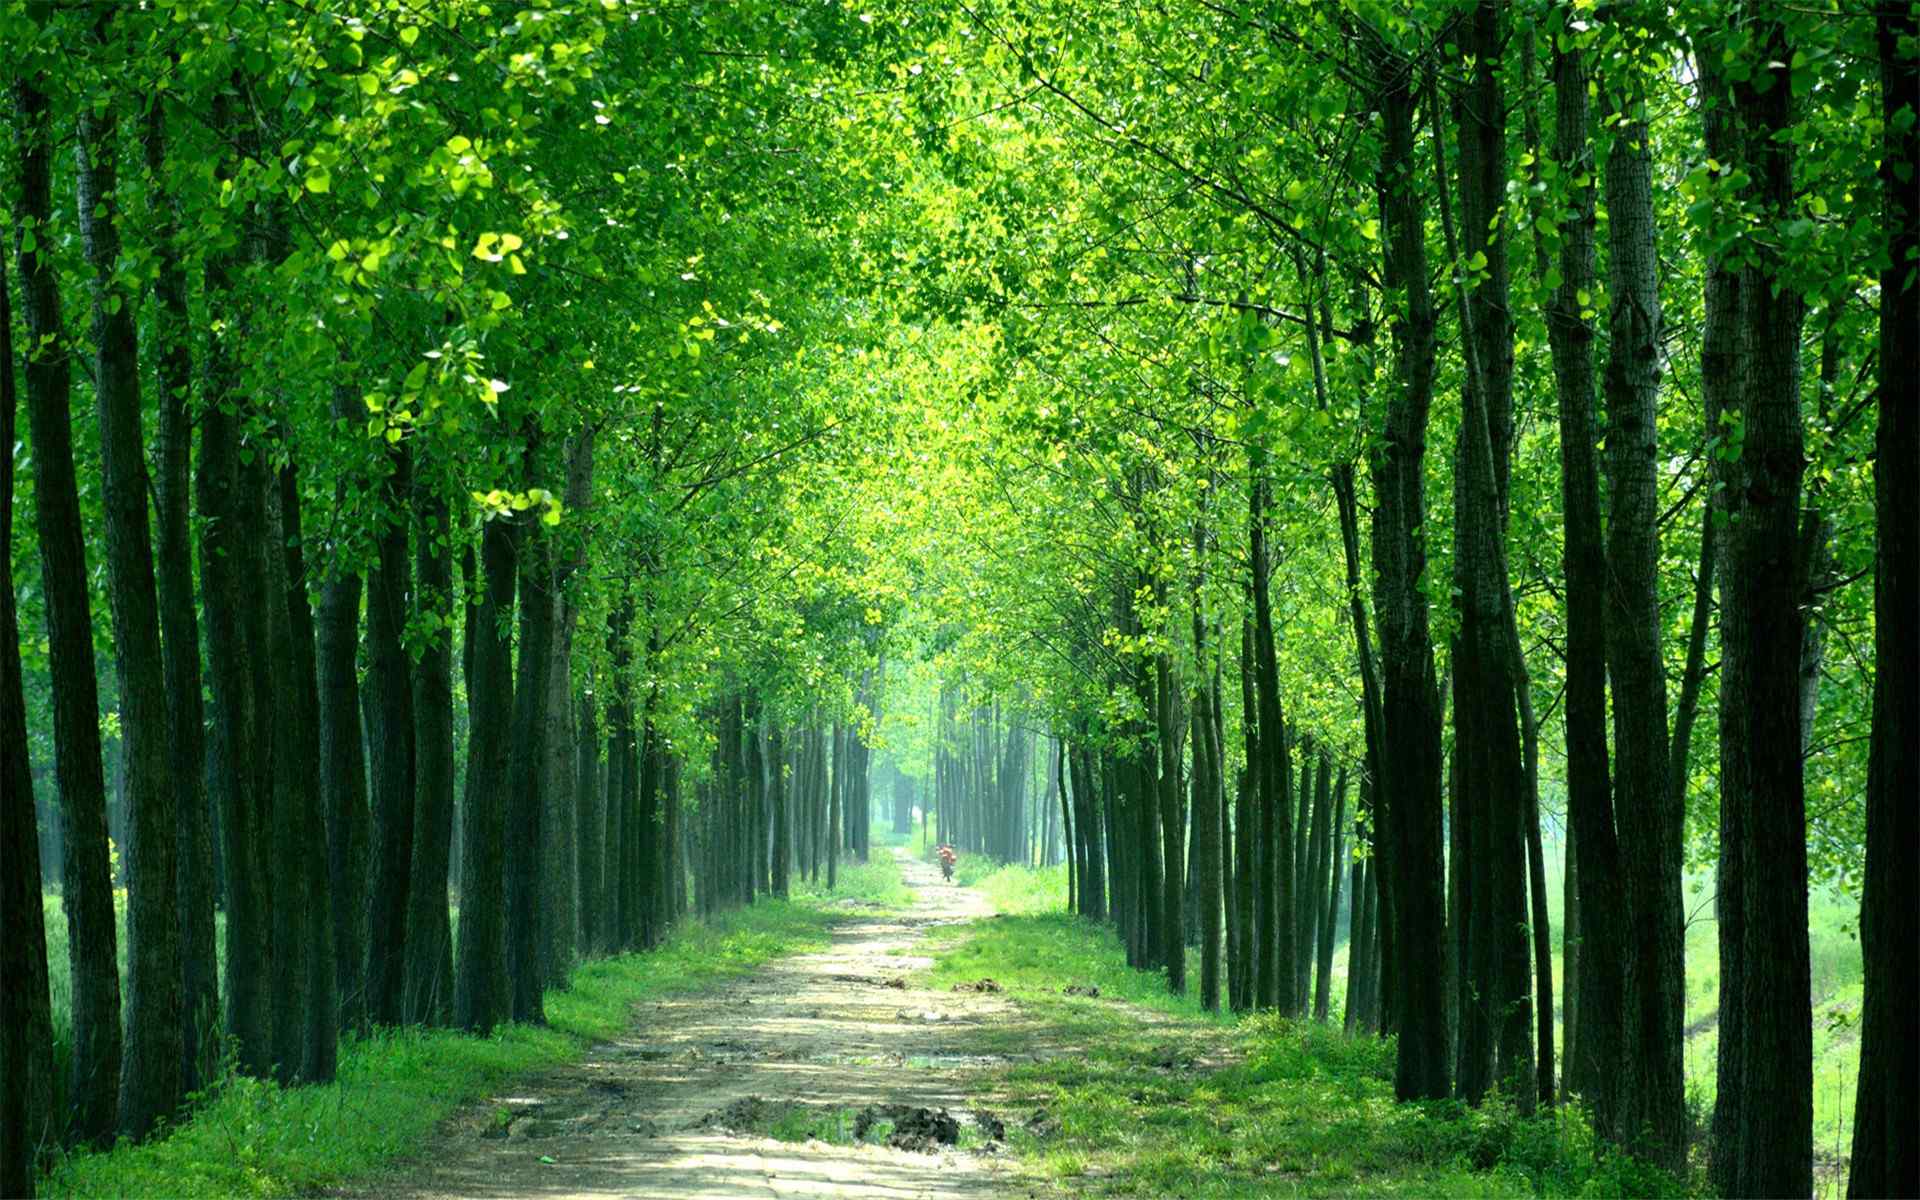 苍翠的山林树木绿叶唯美自然风景桌面壁纸图片大全